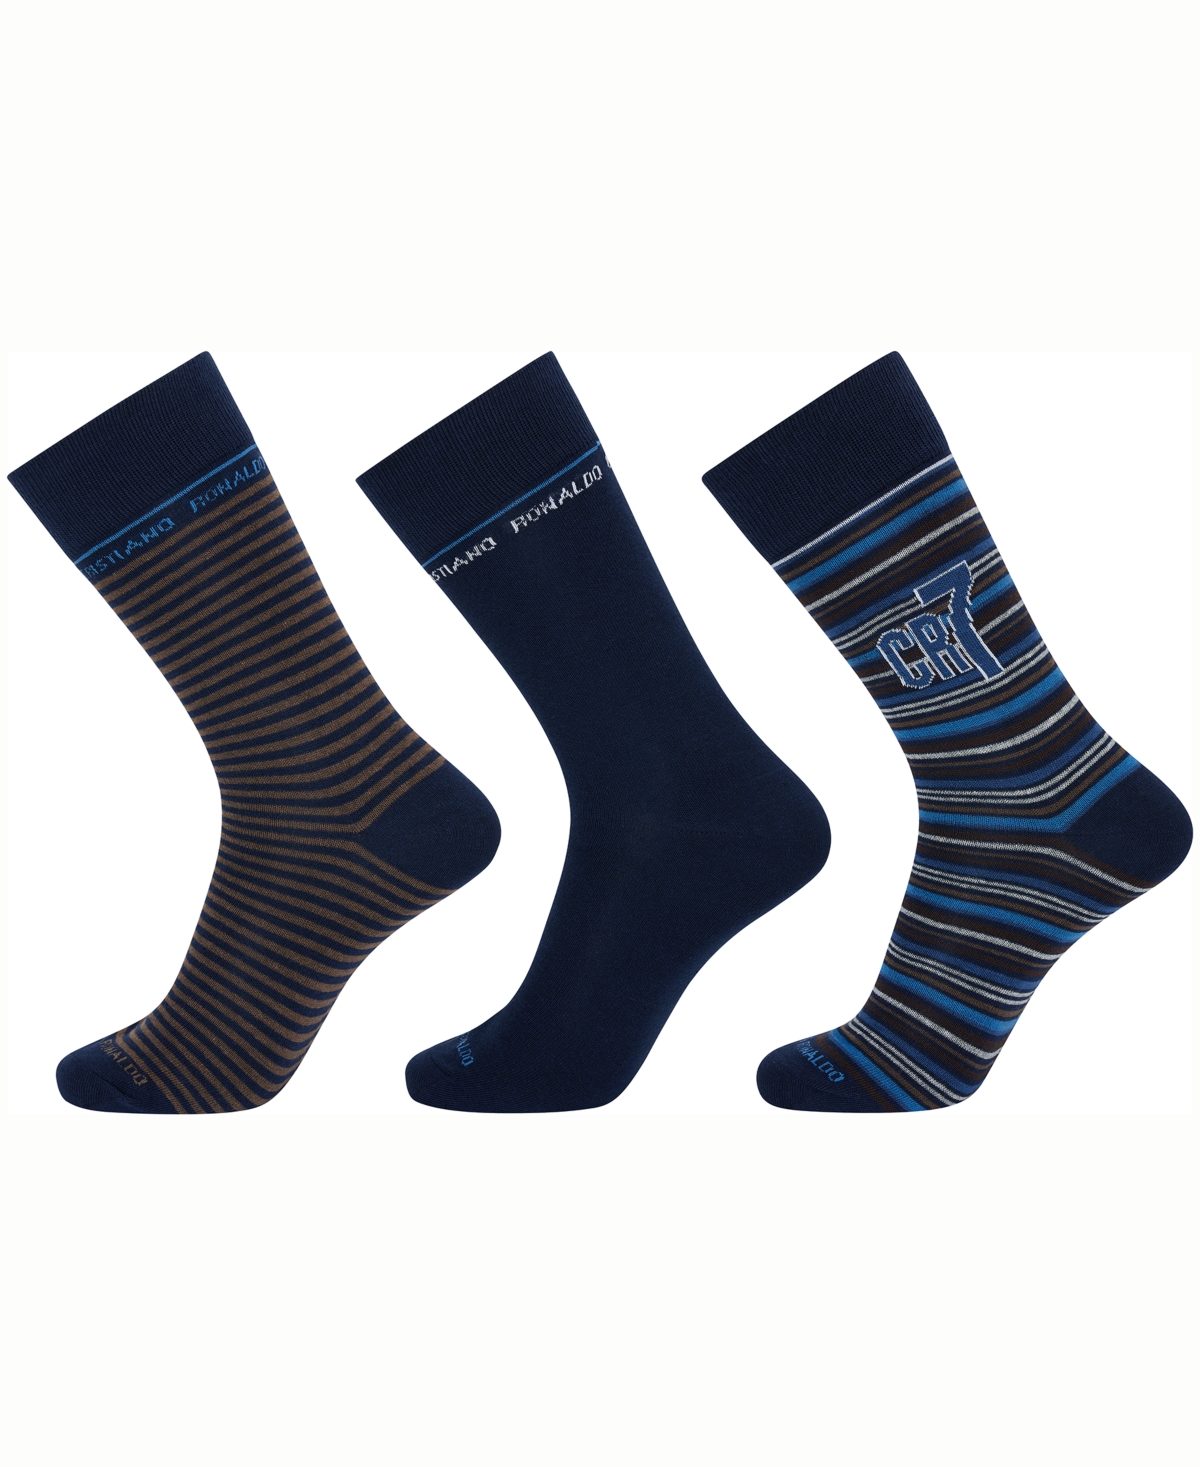 Cr7 Men's Fashion Socks, Pack Of 3 In Black,blue,gray,white